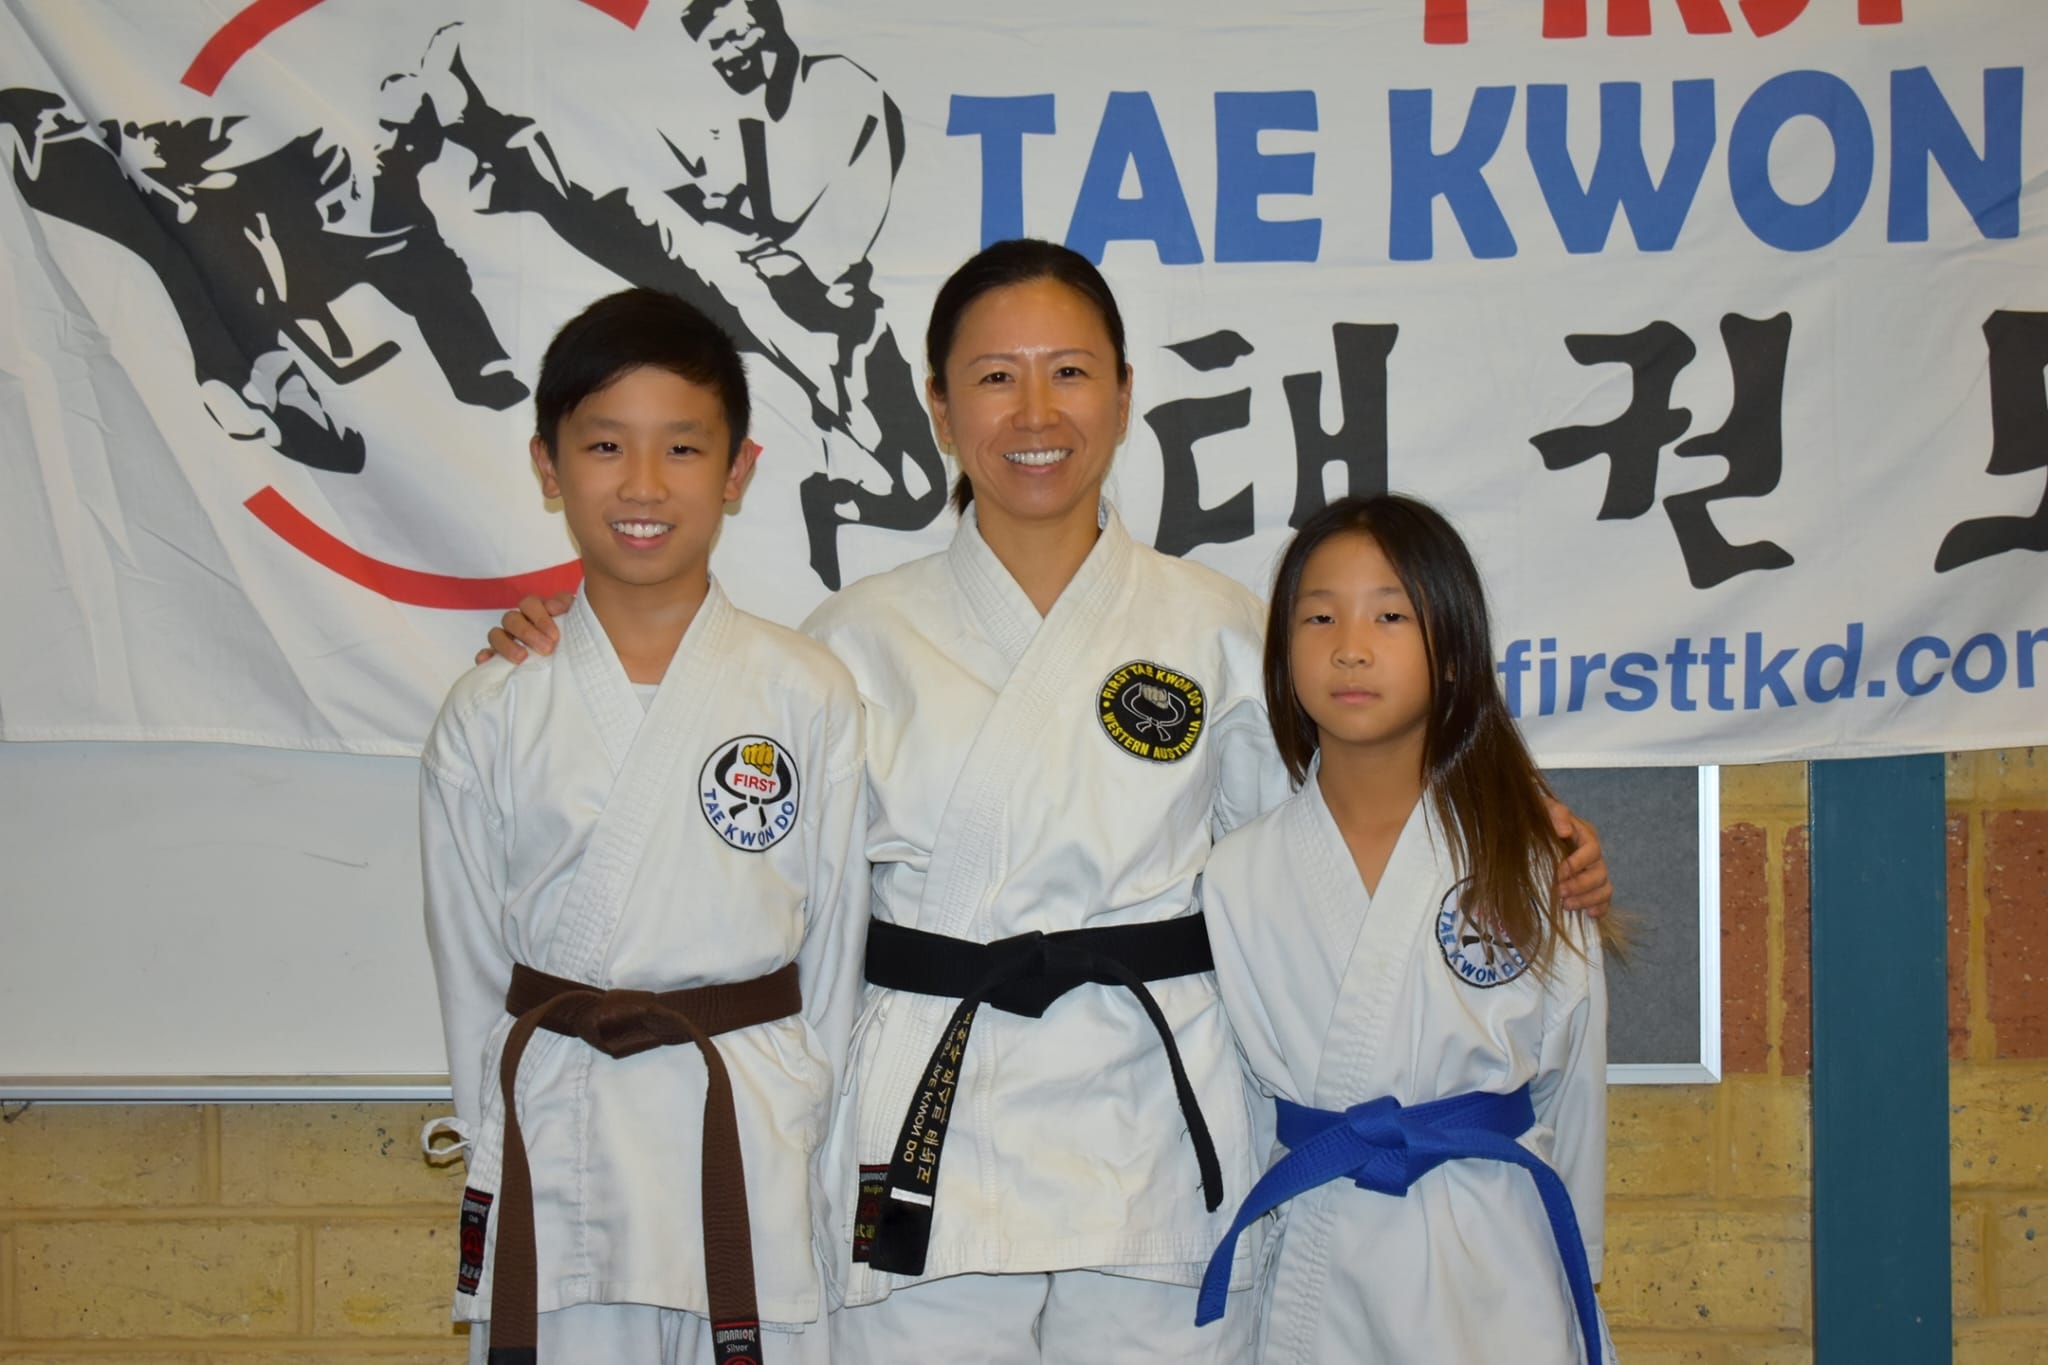 First Taekwondo Canning Vale 20220429 WA0000